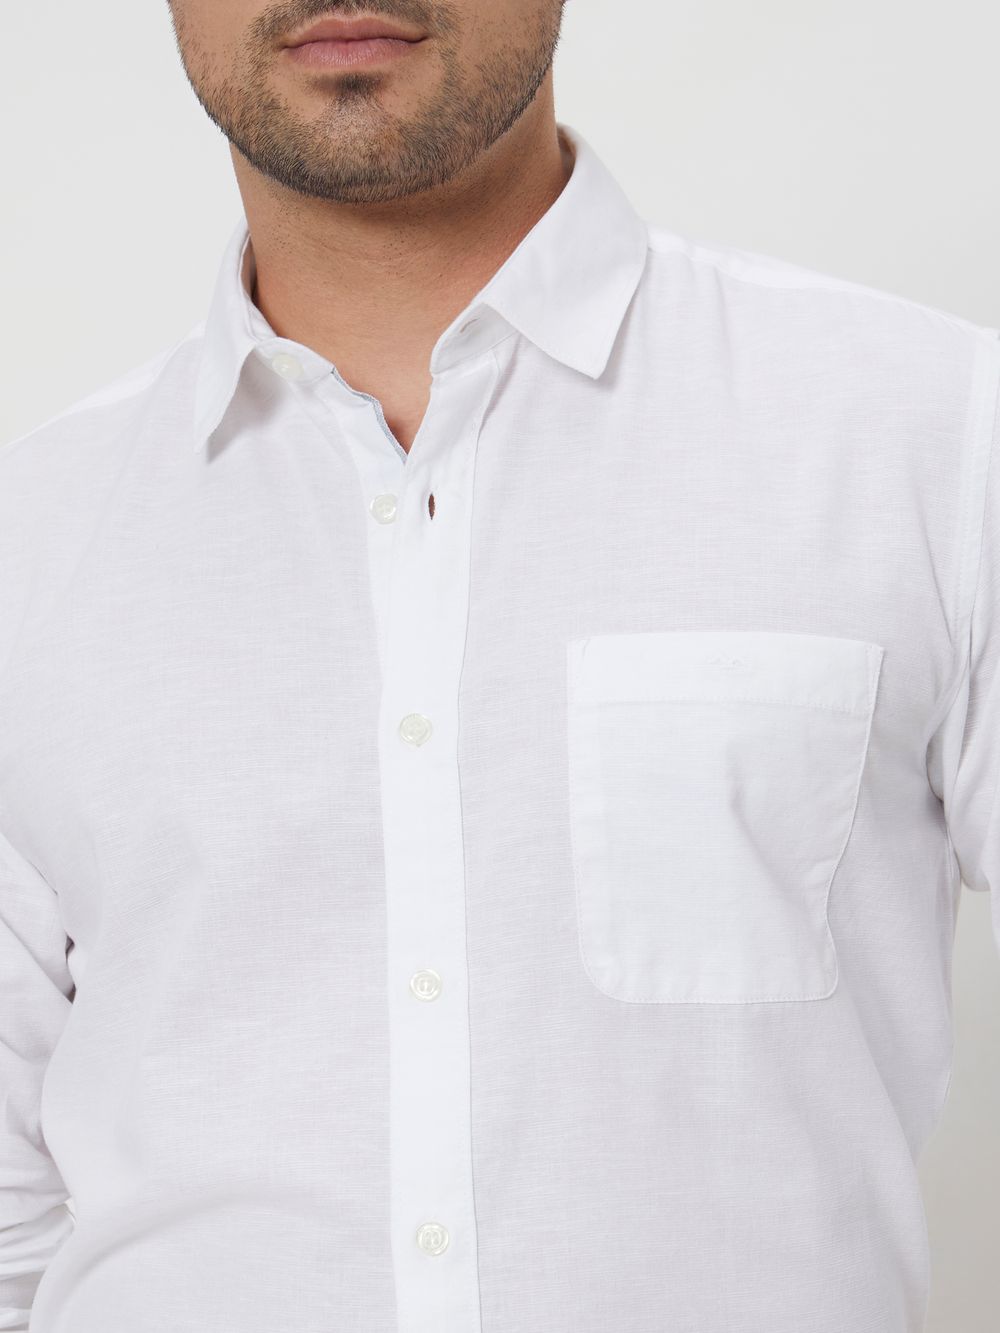 White Cotton Linen Plain Slim Fit Casual Shirt